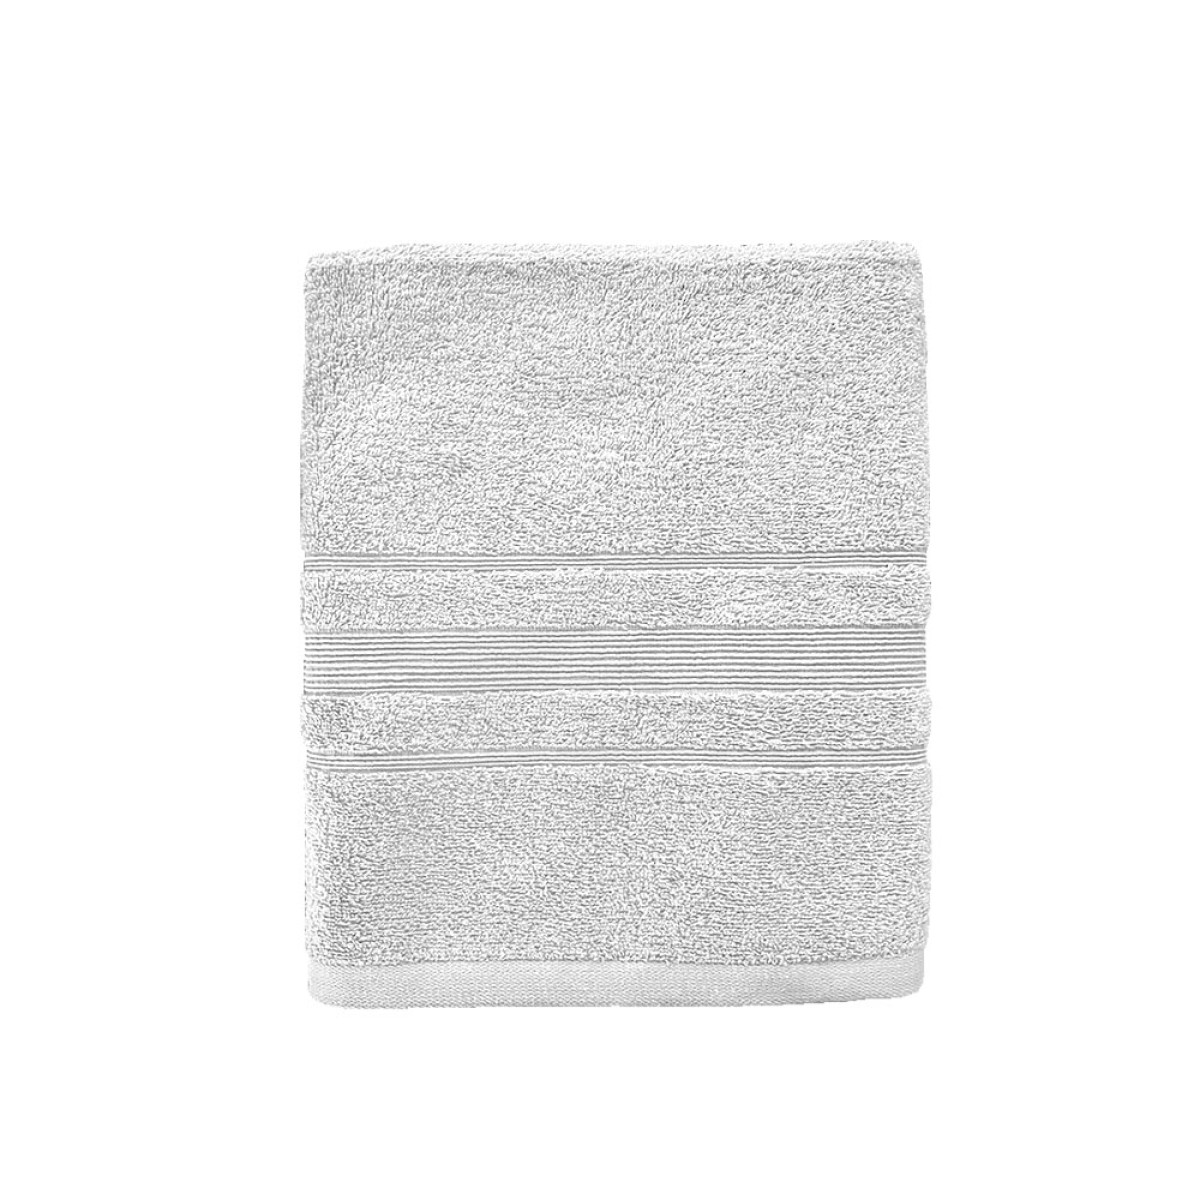 Πετσέτα Προσώπου 550grs (50x90) 100% Βαμβάκι με μπορντούρα με ανάγλυφο σχέδιο λευκό χρώμα Sidirela Line E-3202-6